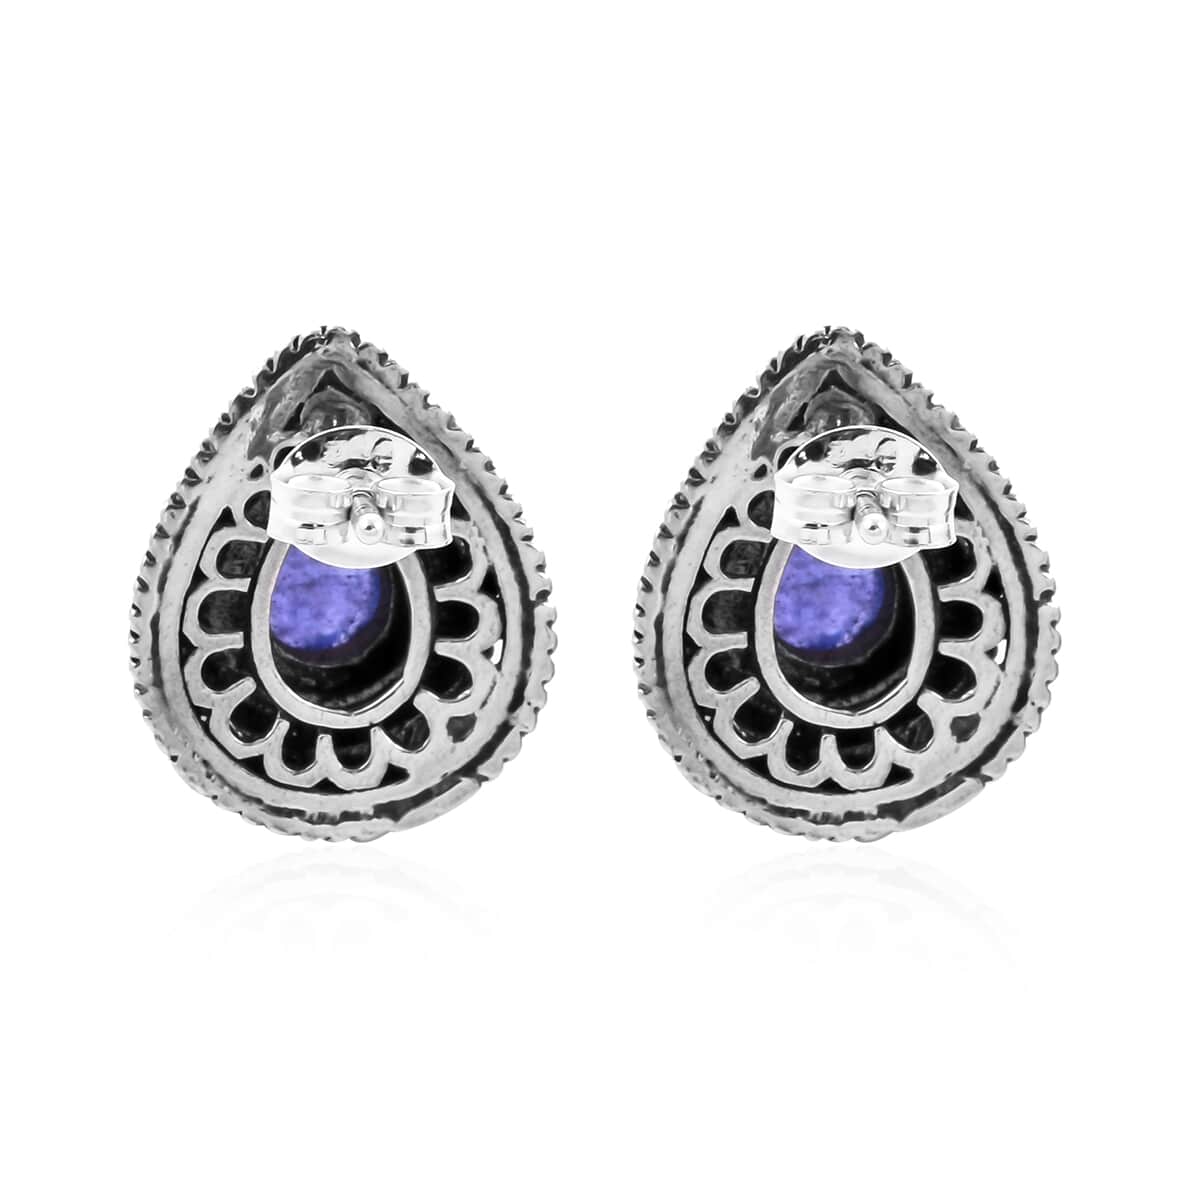 BALI LEGACY Tanzanite Stud Earrings in Sterling Silver 2.25 ctw image number 4